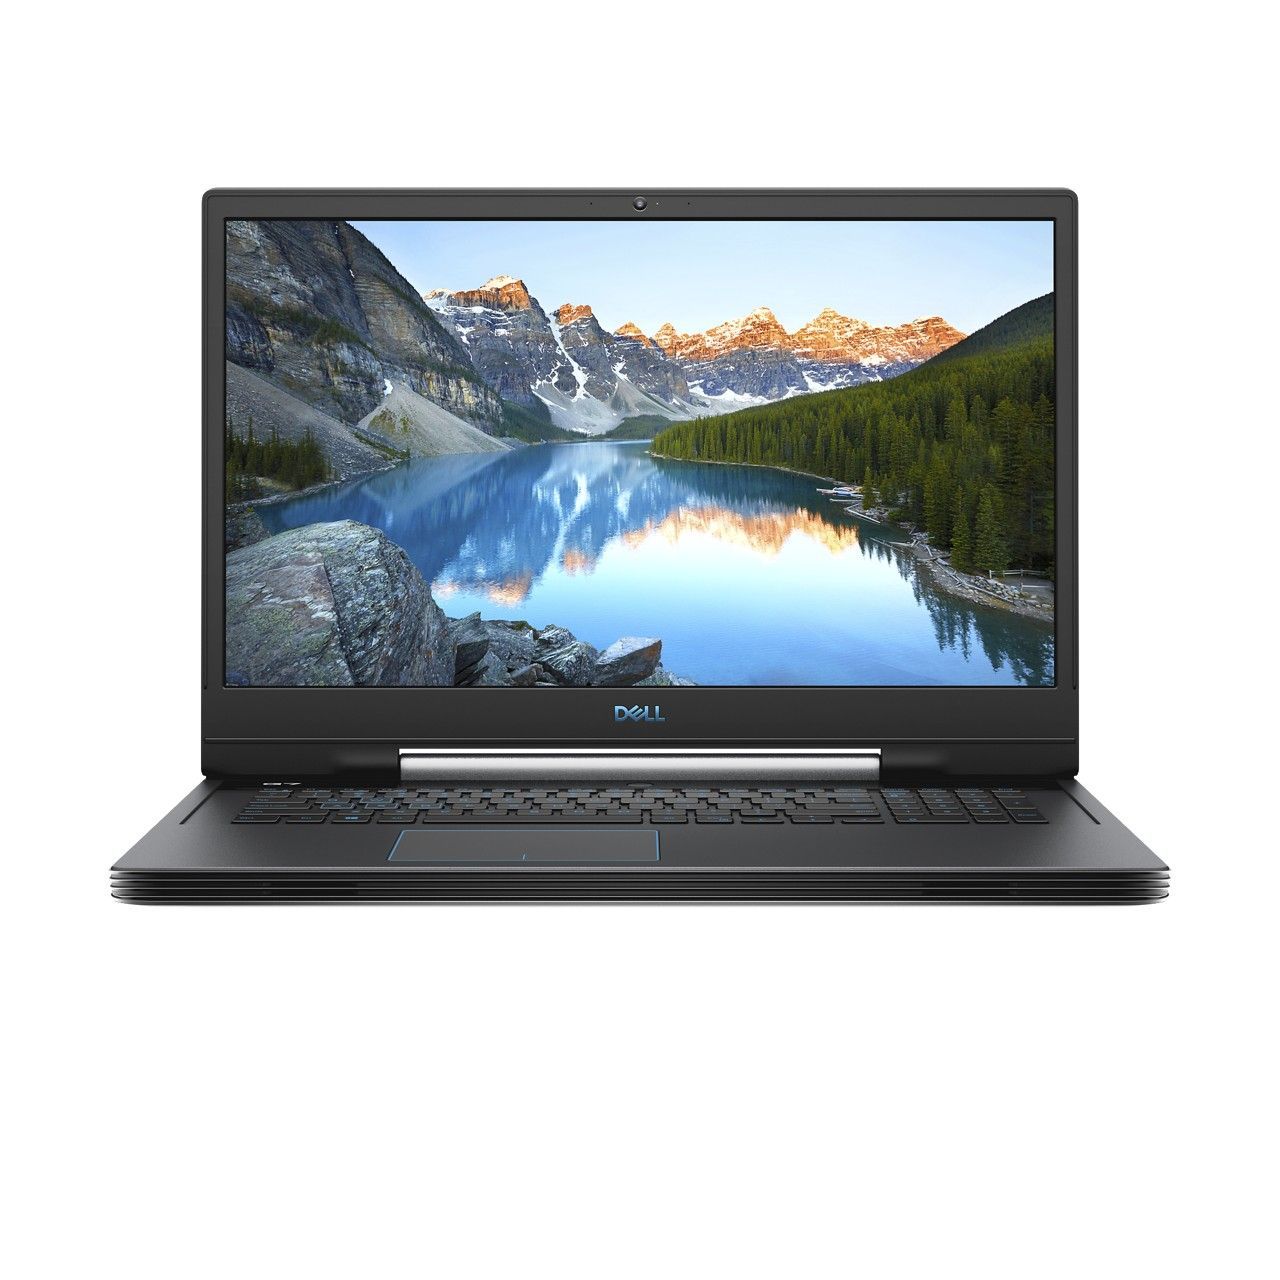 Dell G7-E1296 Gaming Laptop i7-9750H/16GB/1TB HDD + 256GB SSD/NVIDIA GeForce RTX 2060 6GB/17.3 inch FHD/60Hz/Windows 10/Grey